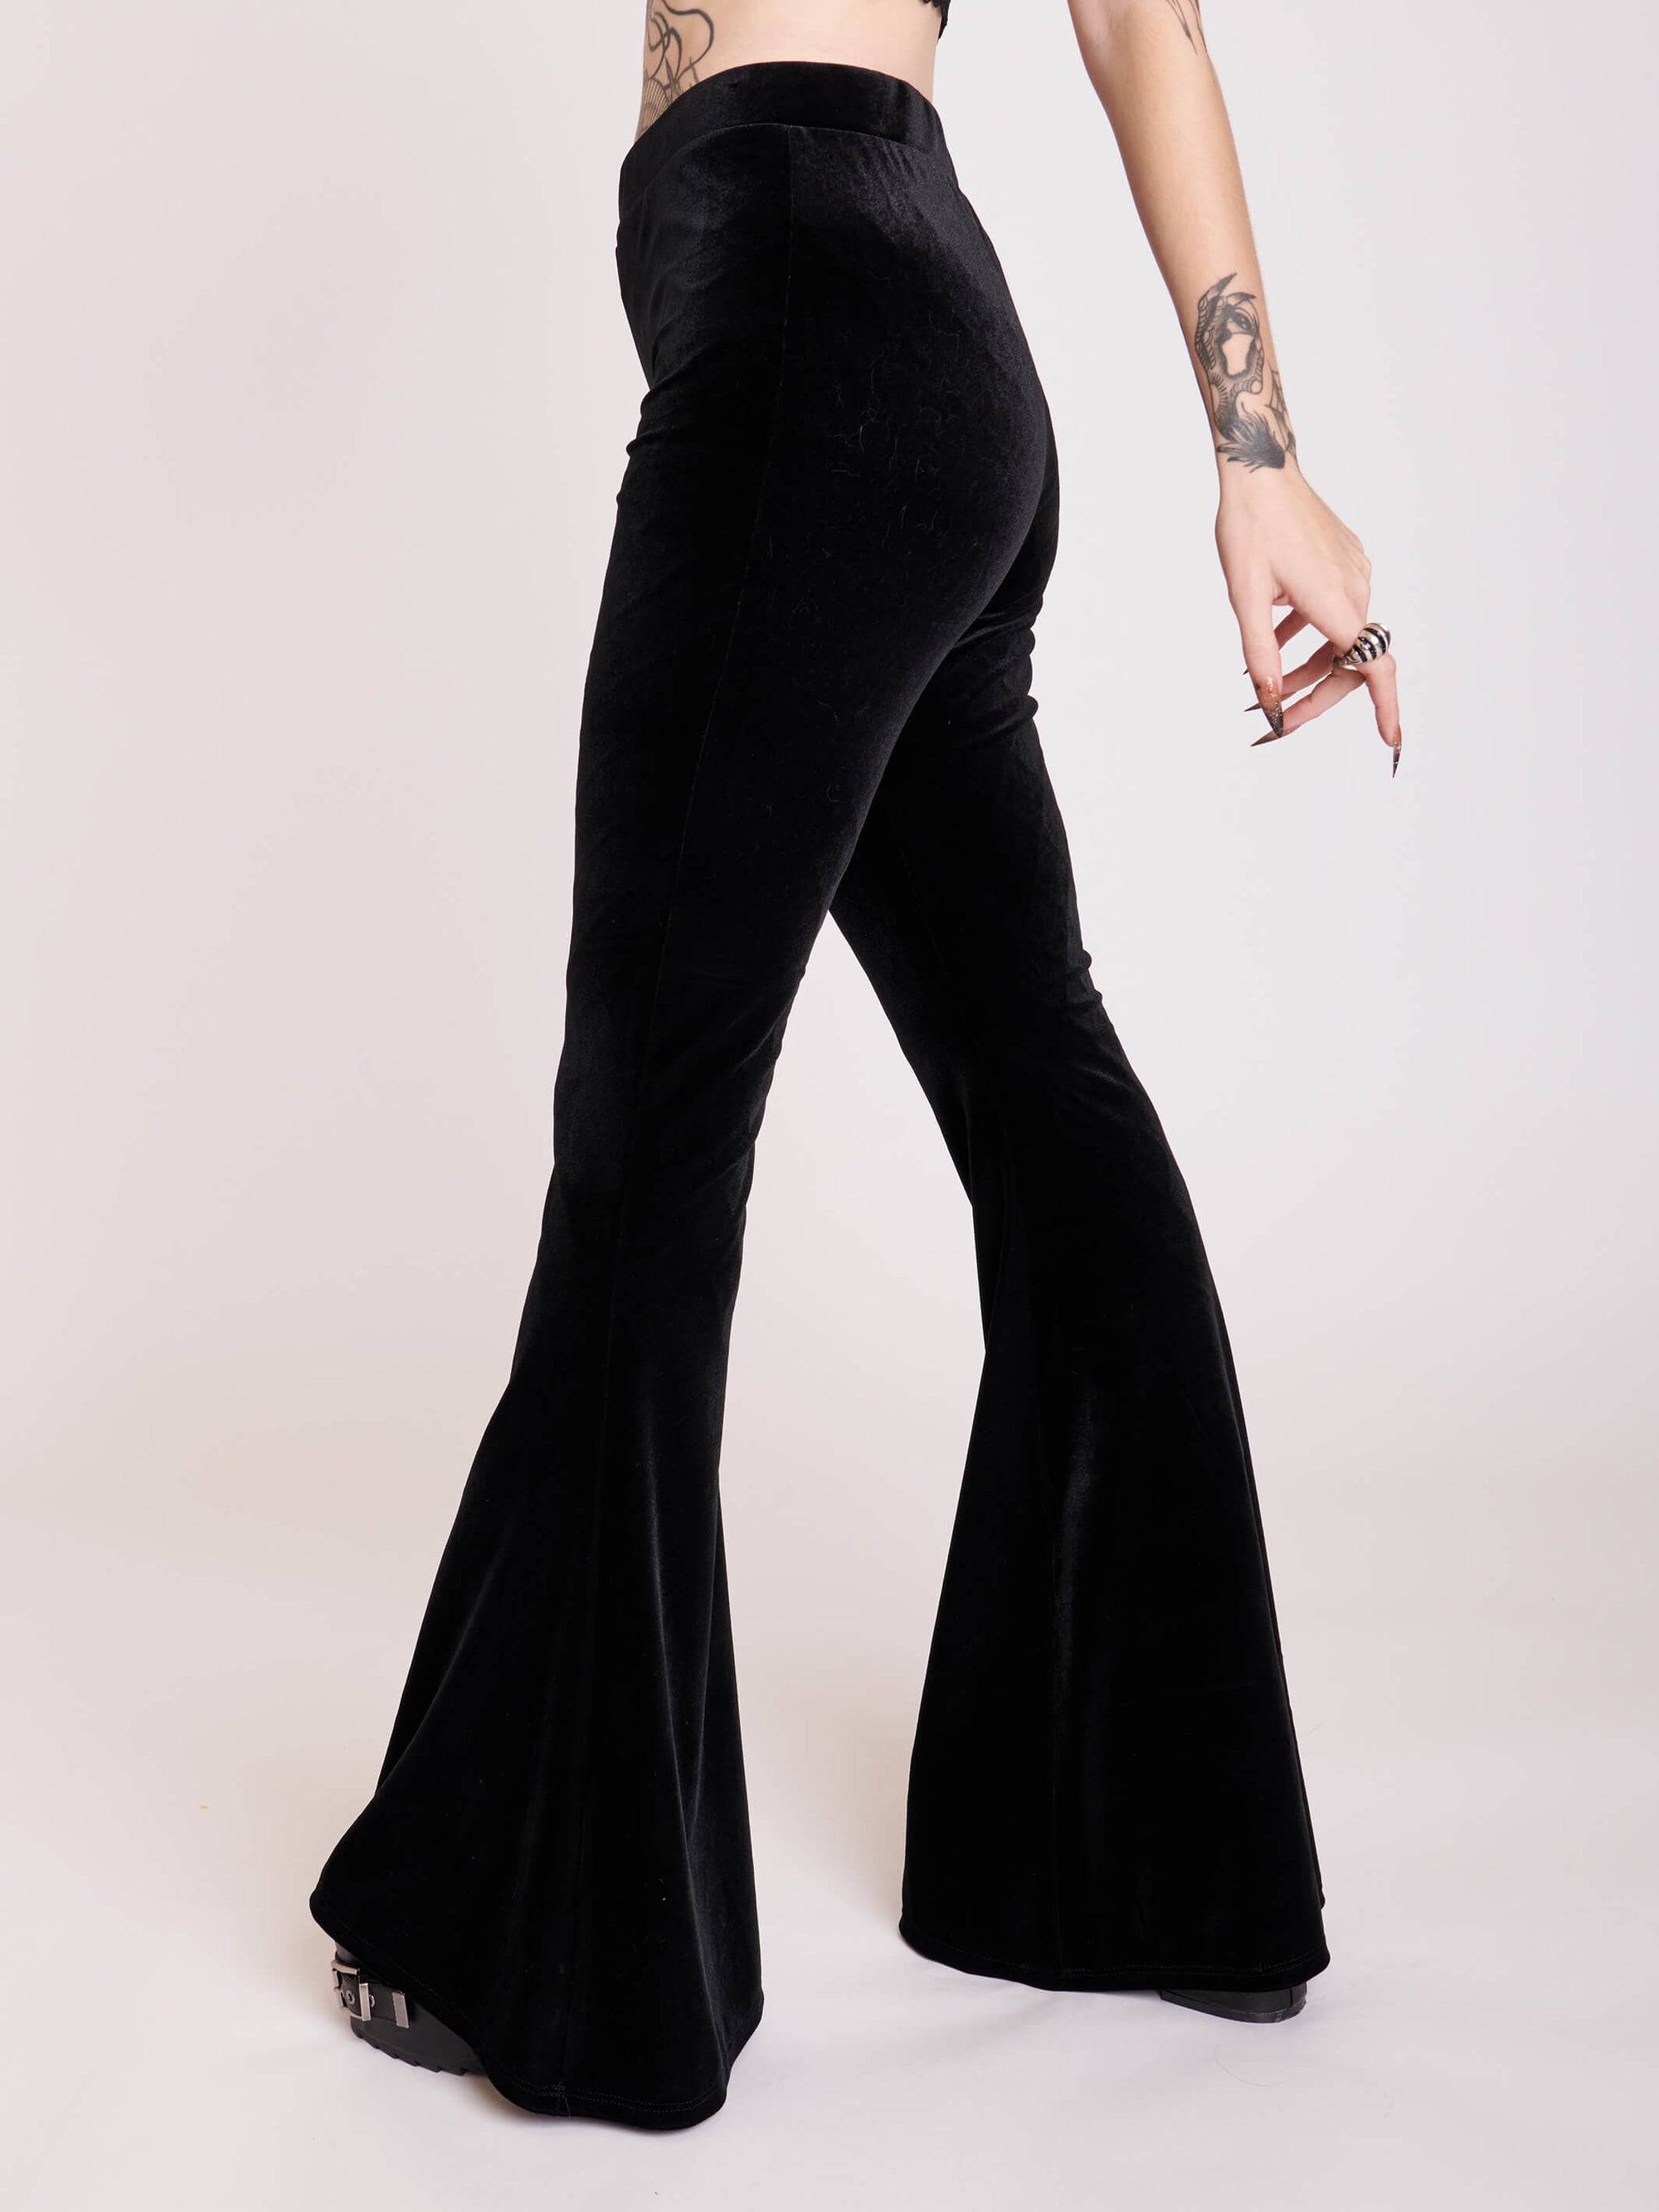 Gothic Black stretch velvet flared legging pants. 